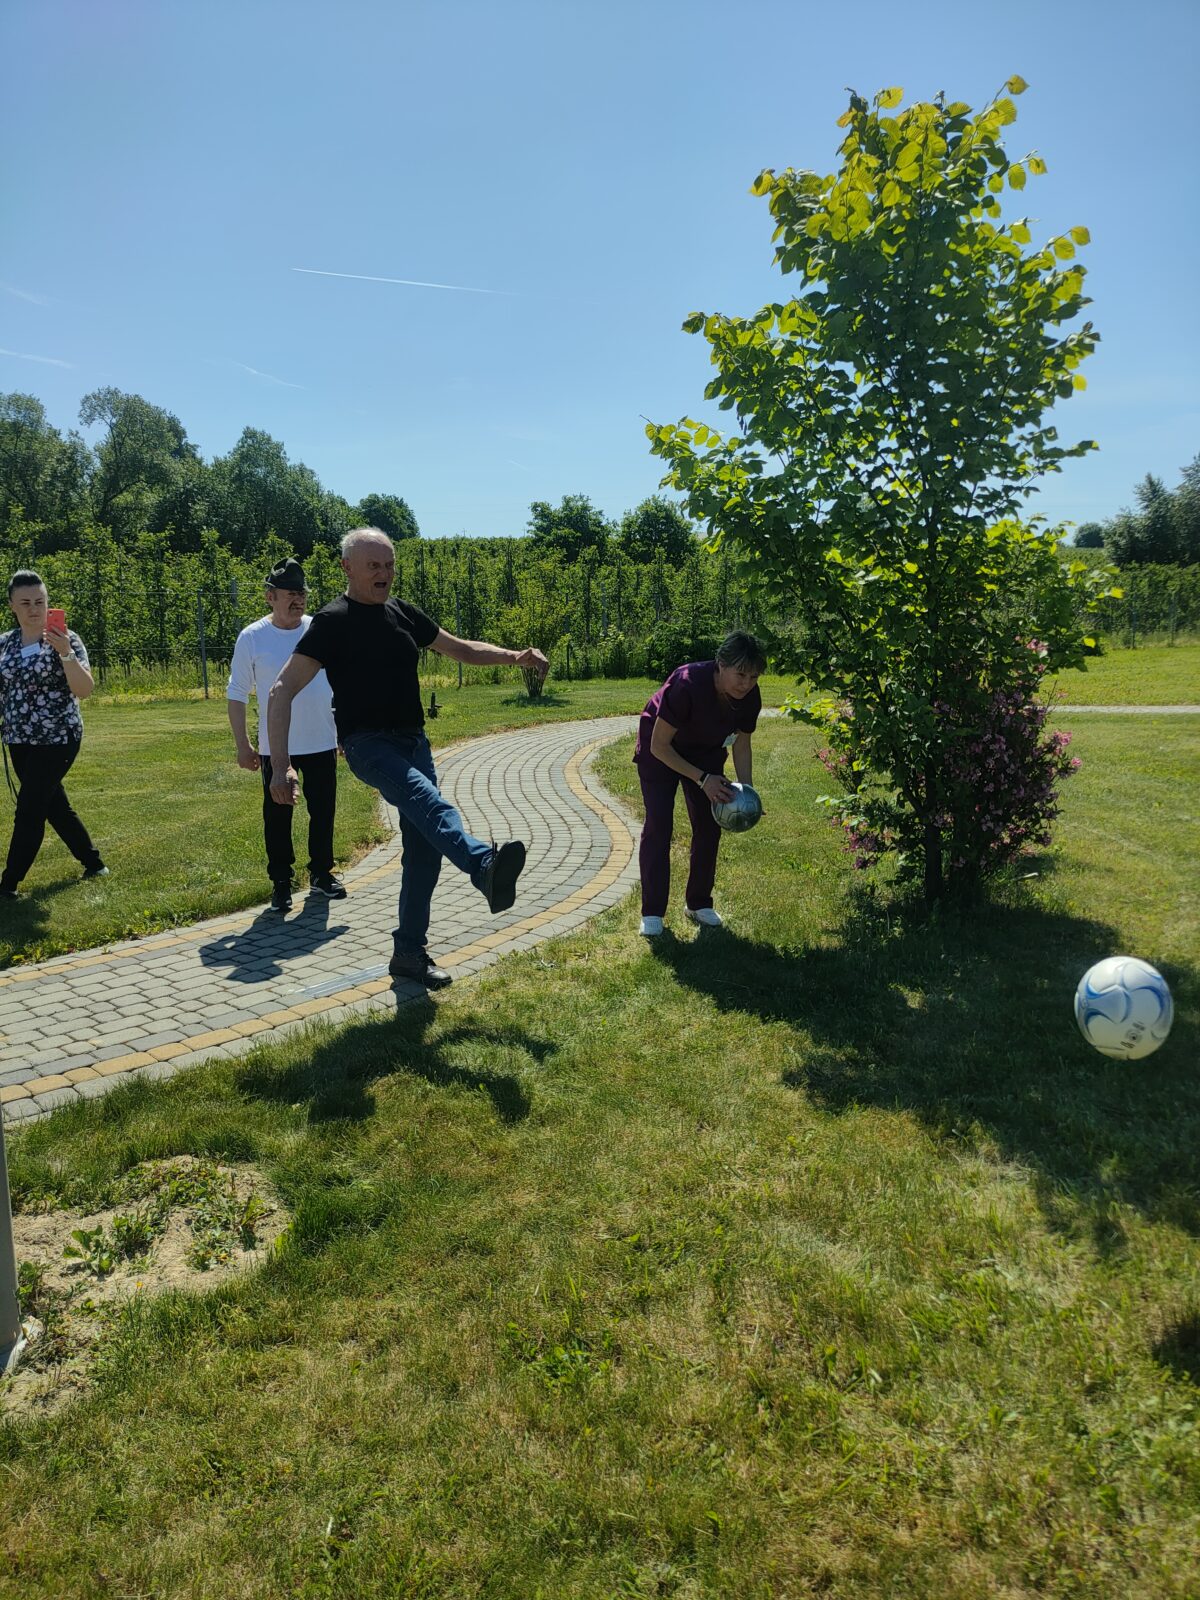  Mężczyzna w pozycji po kopnięciu piłki, w tle dwie osoby - mężczyzna i kobieta, po prawej stronie kobieta podnosi piłkę. W prawym dolnym rogu lecąca piłka. Wszystko dzieje się wśród zieleni na zielonej trawie.